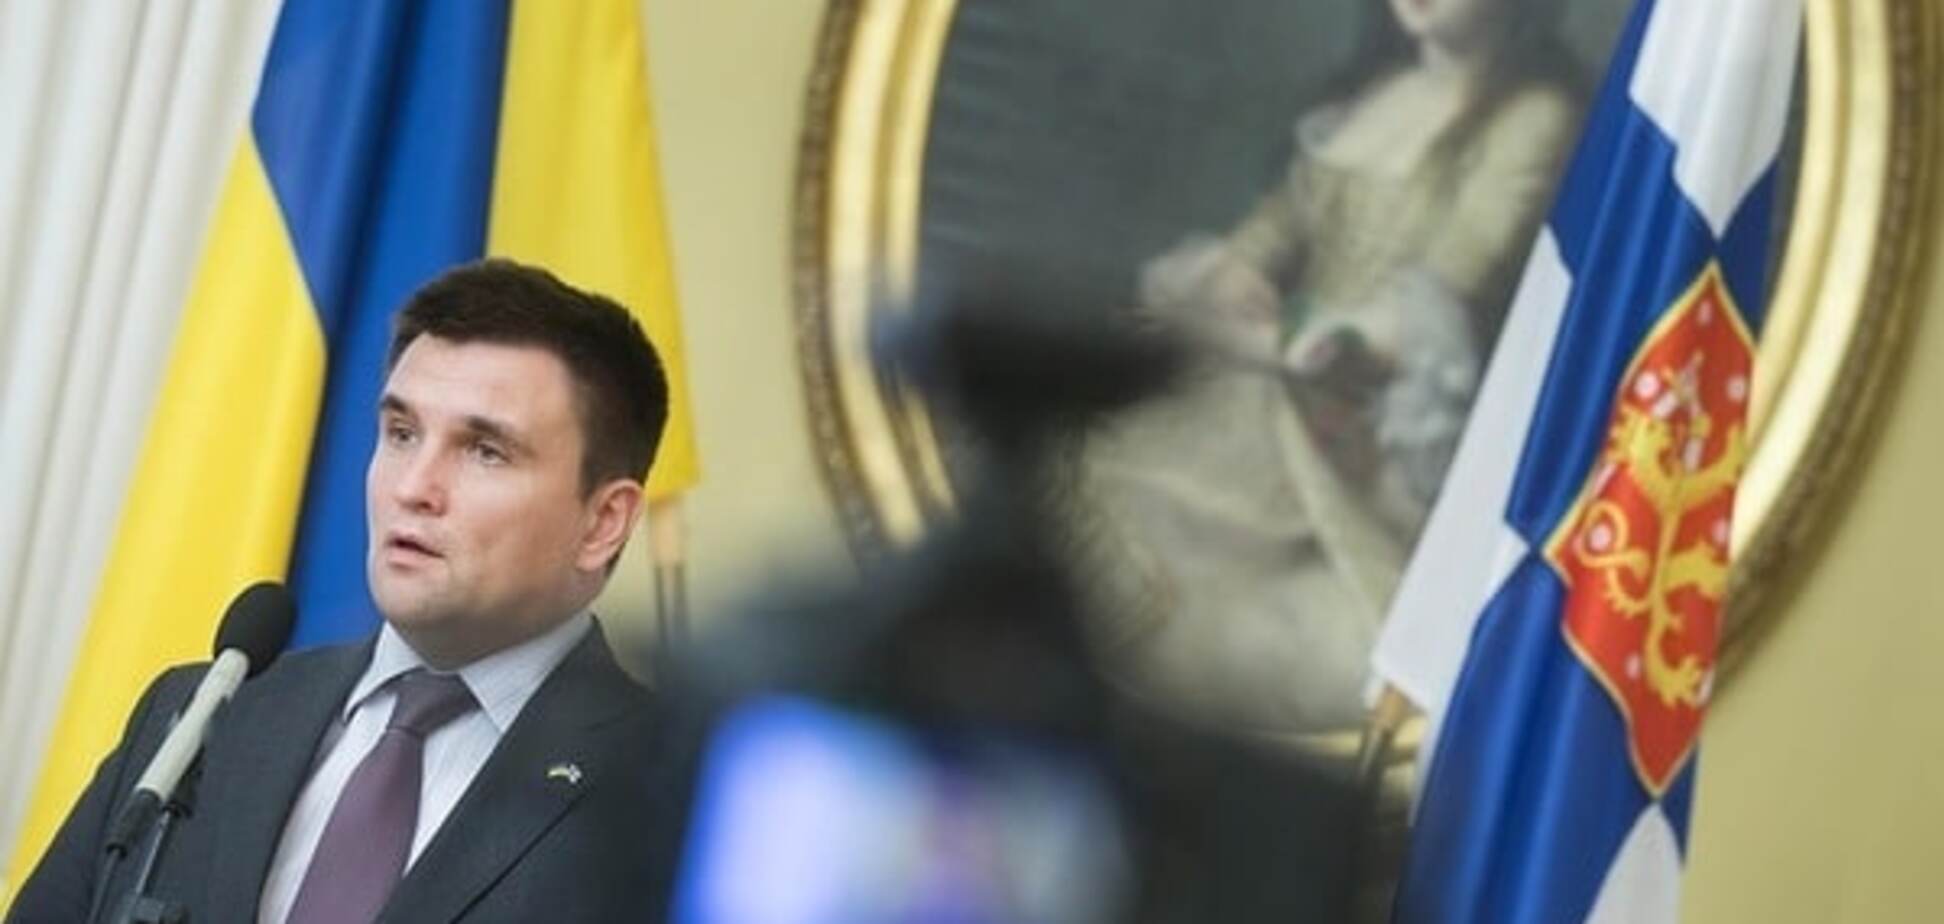 Украина готовит новые иски против России из-за аннексии Крыма - Климкин